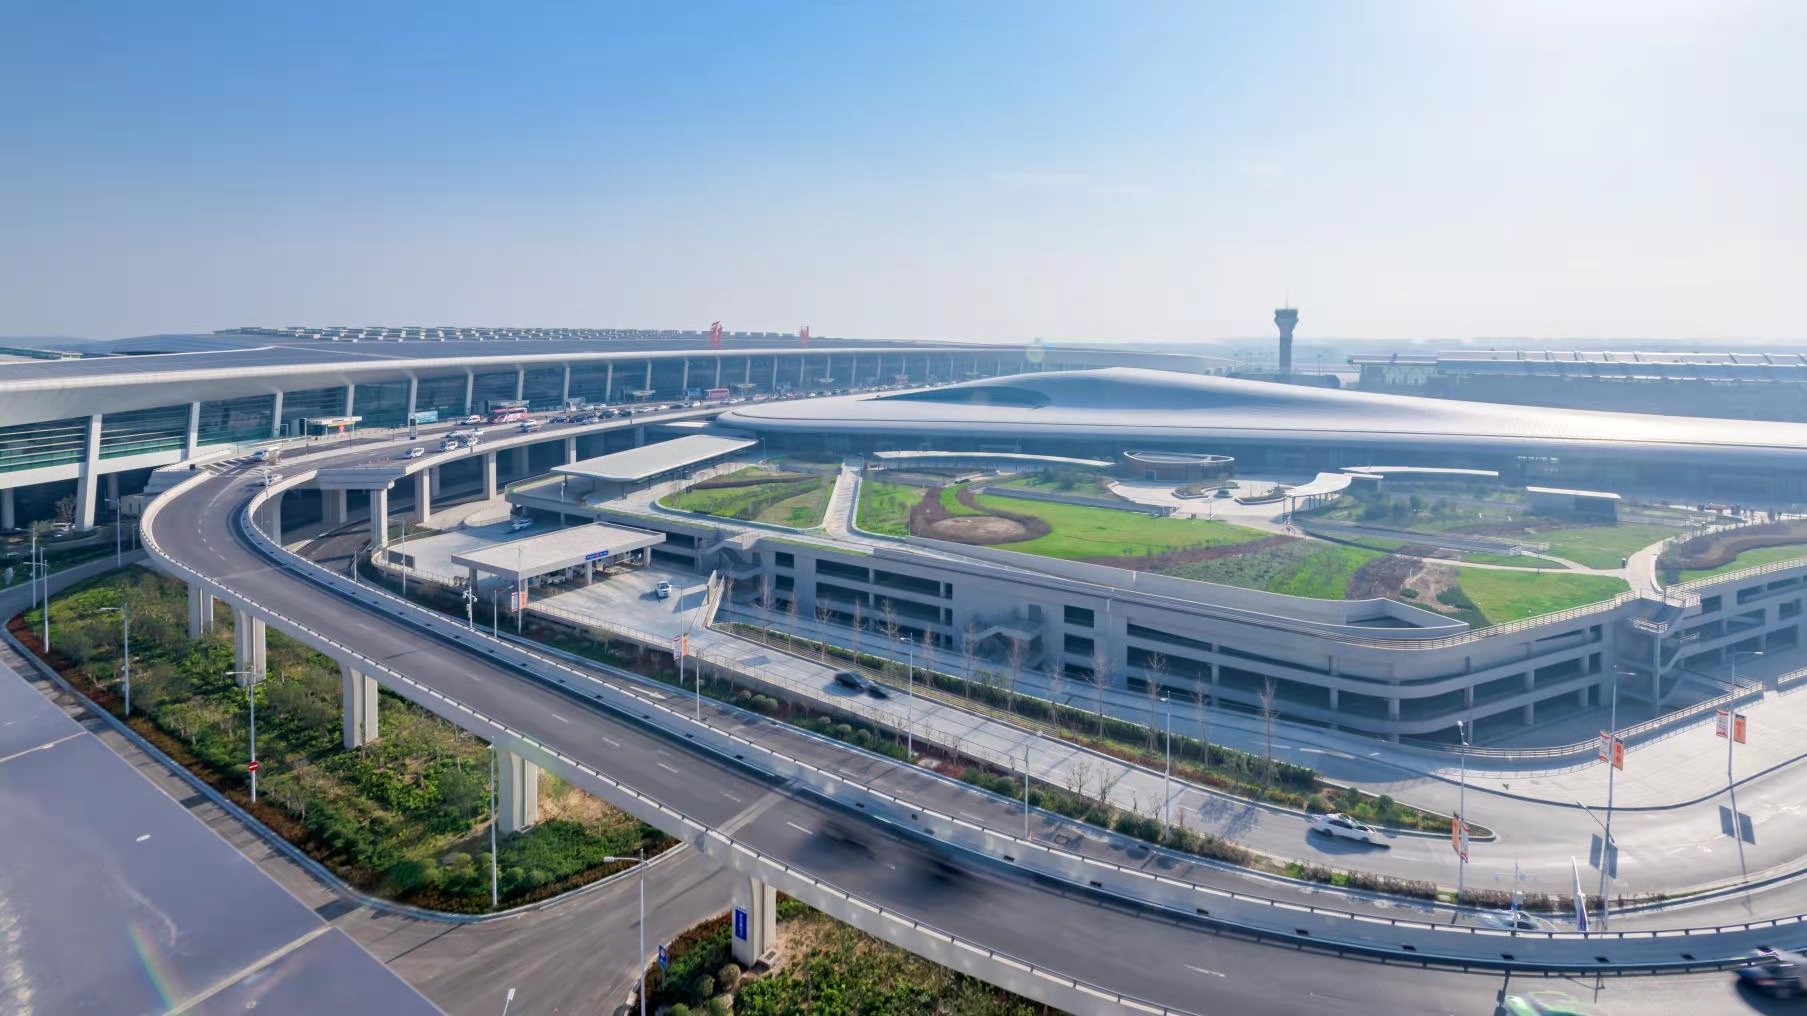 主动融入新发展格局,推动郑州航空枢纽实现高质量发展,进一步增强